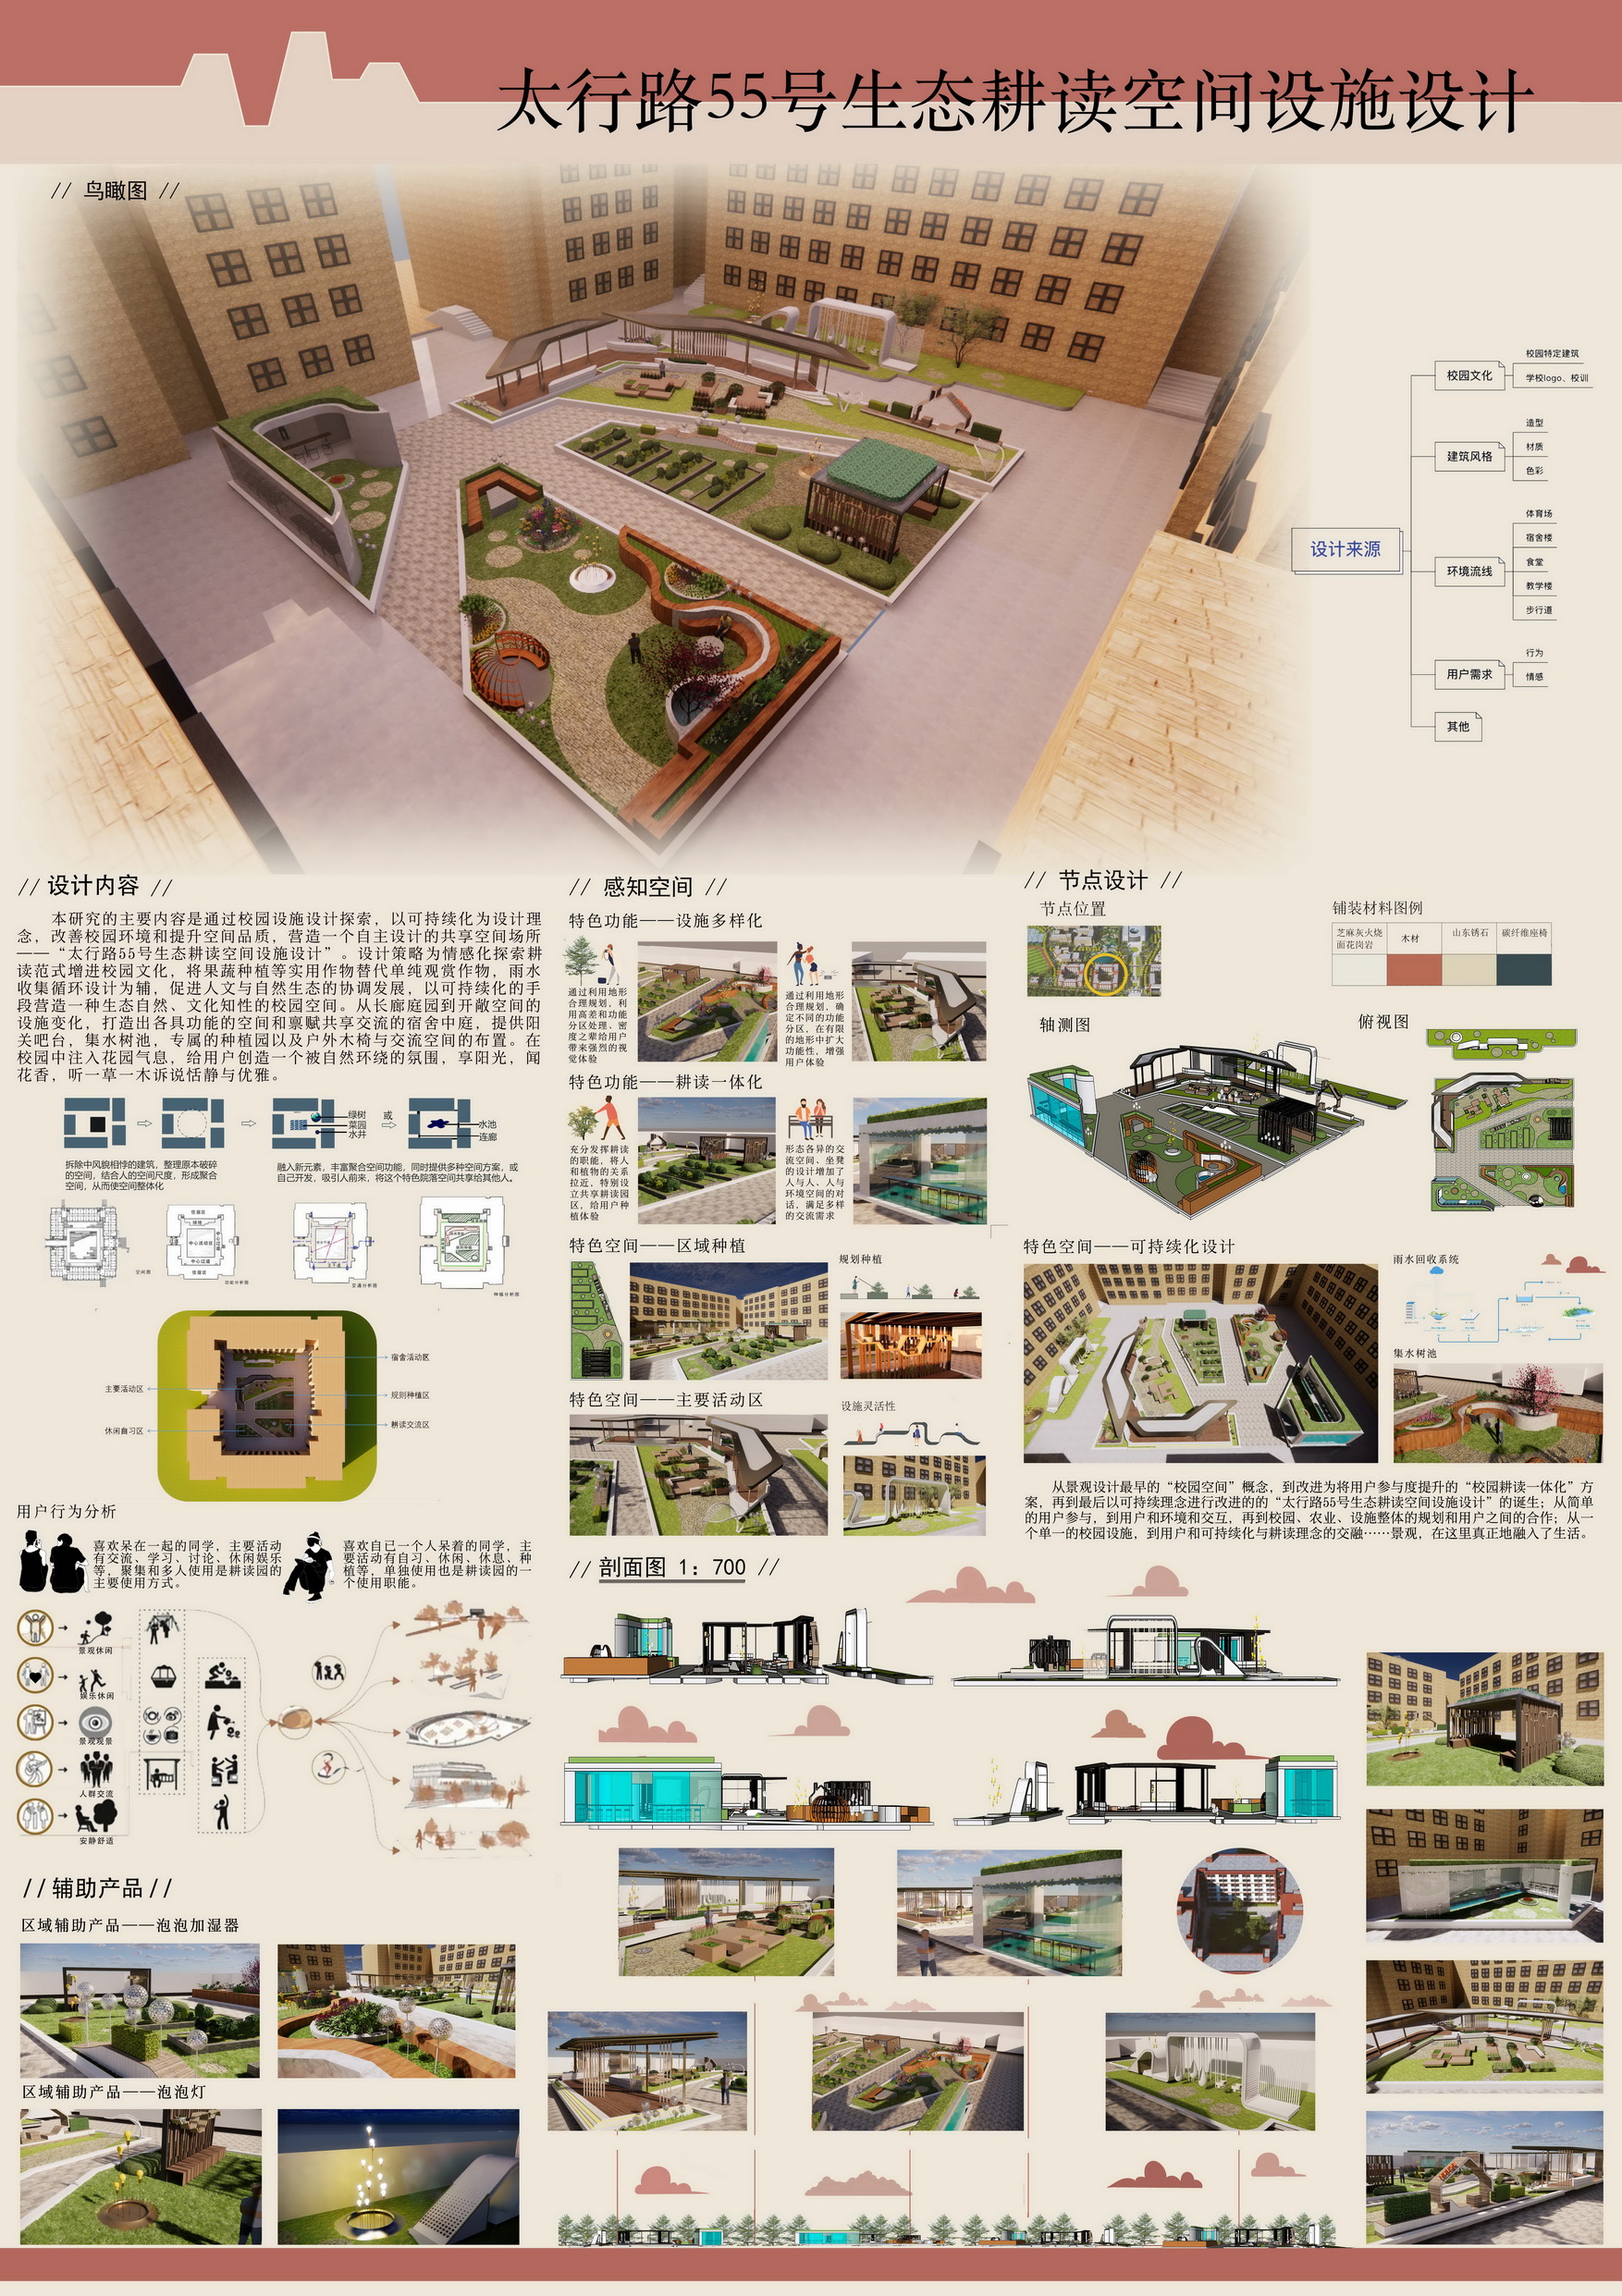 人居环境竞赛作品——太行路55号生态耕读空间设施设计